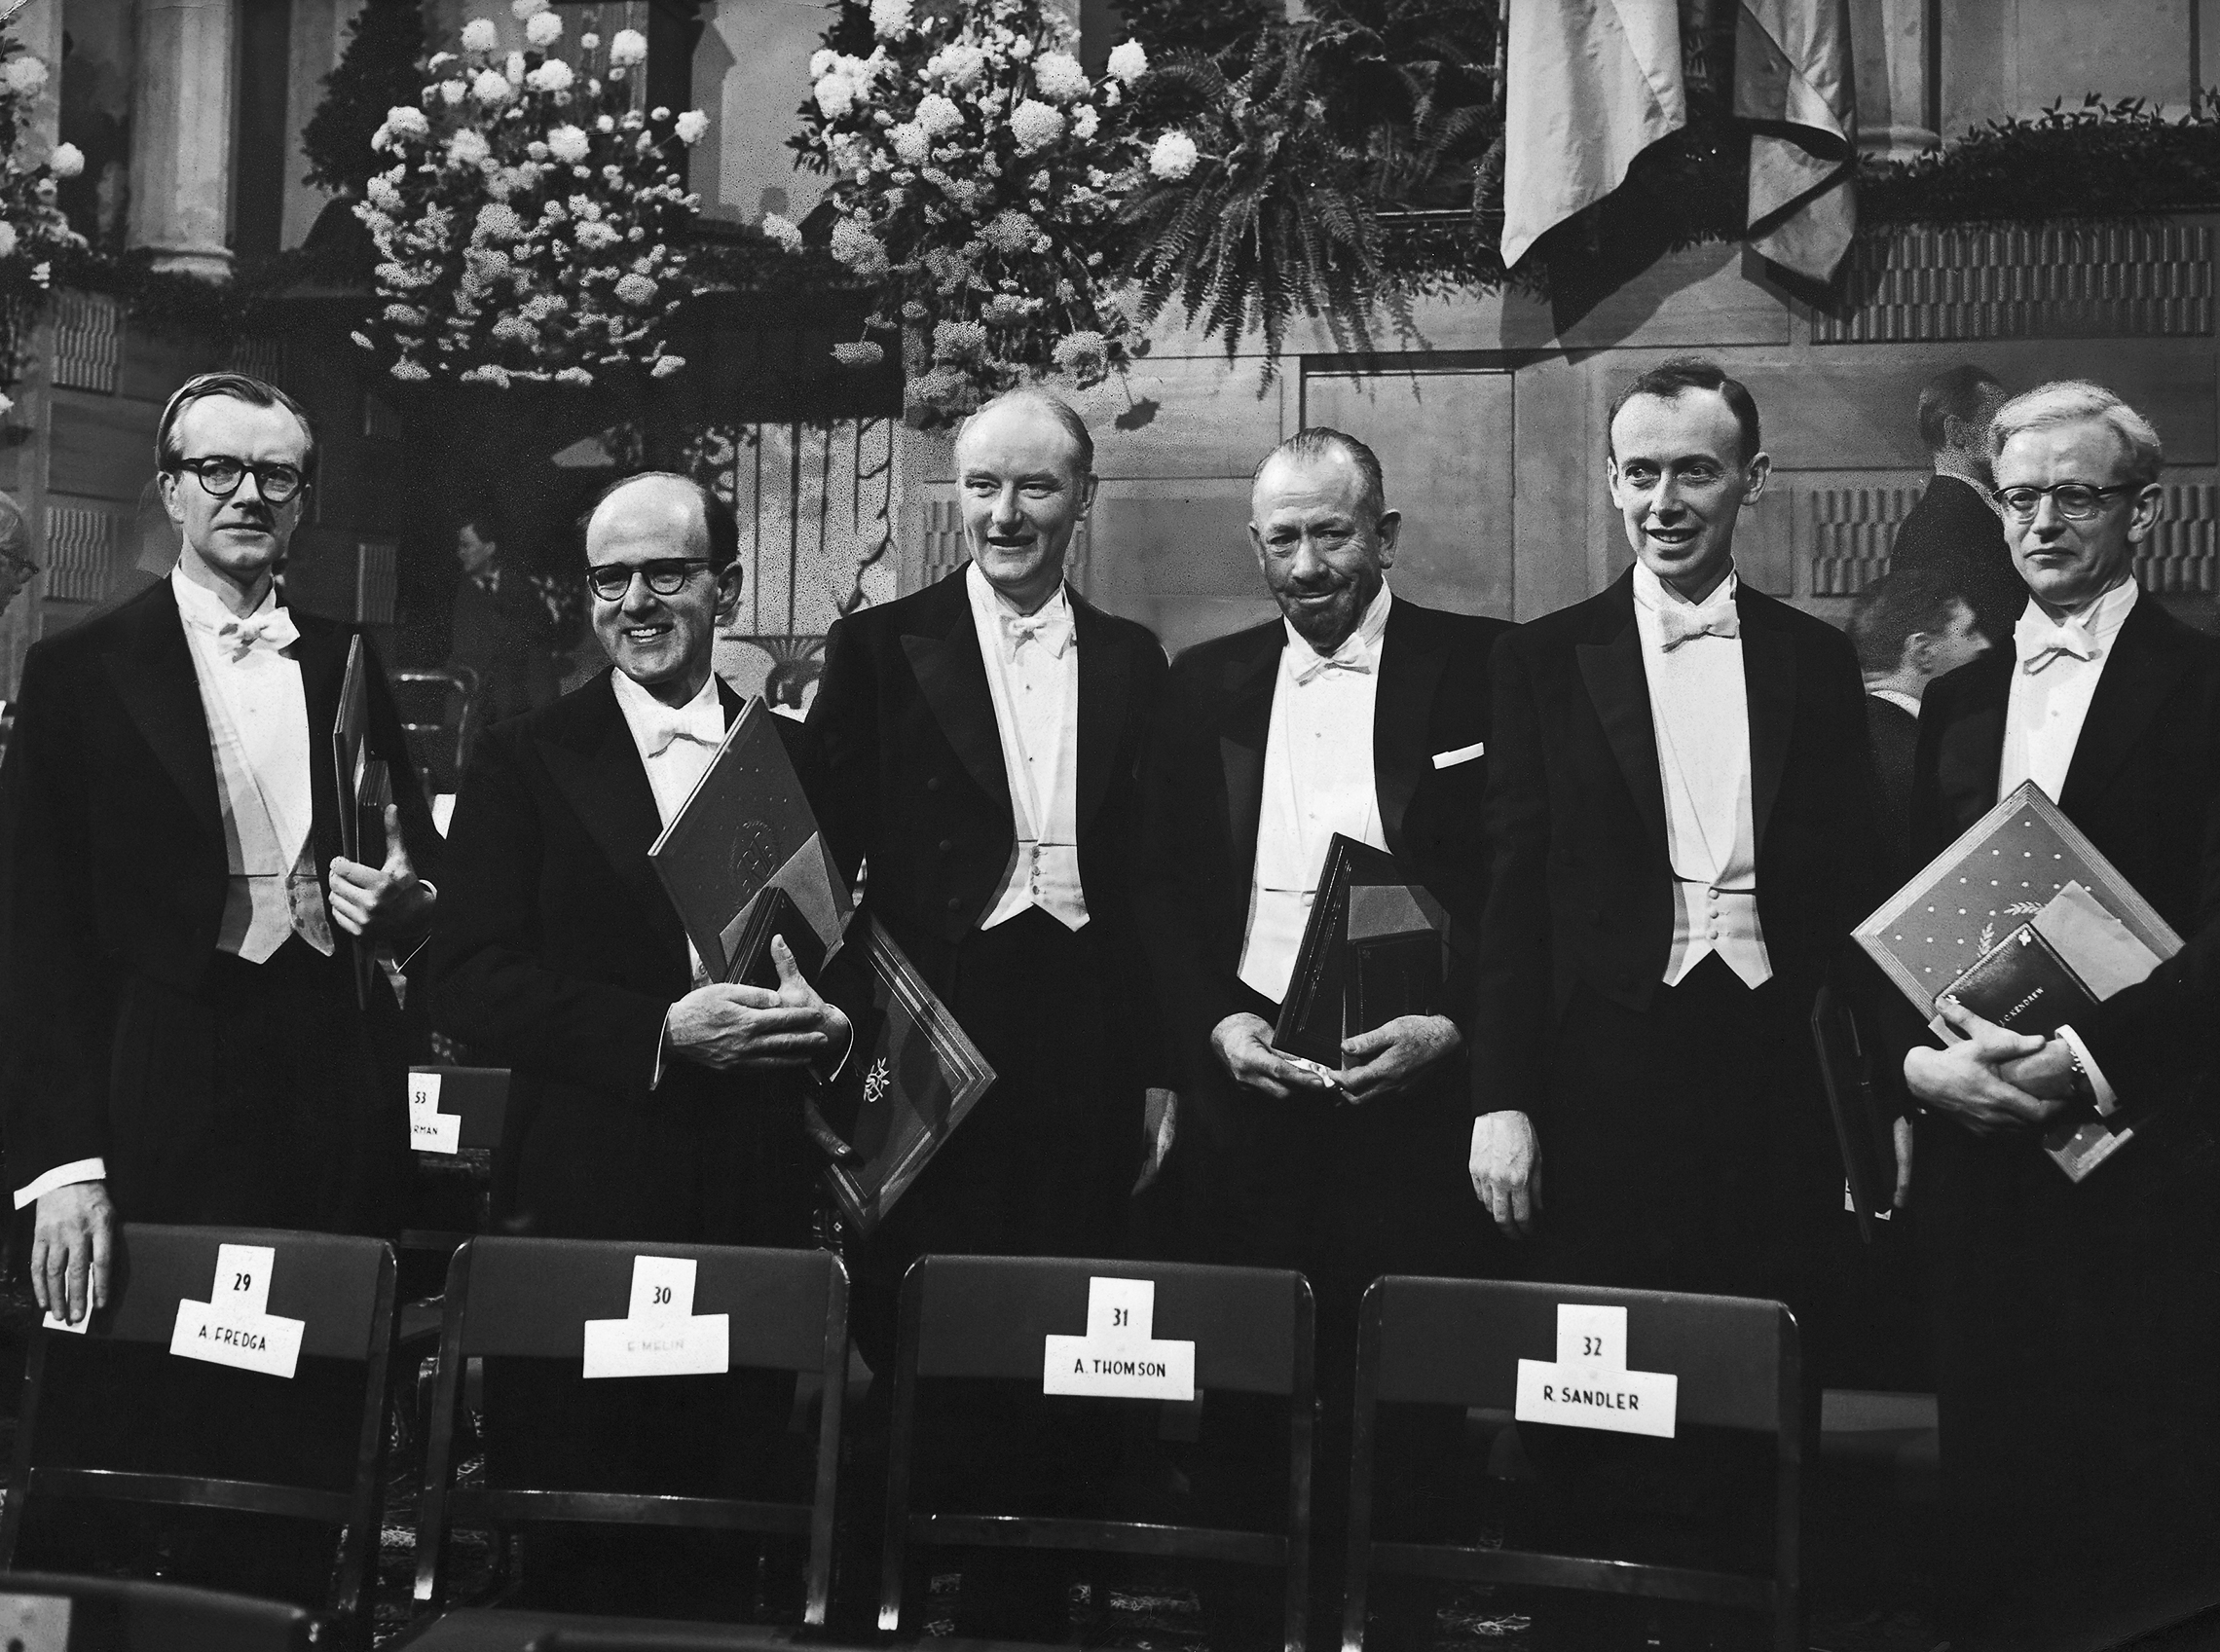 Watson y Crick, junto a Wilkins, recibieron el Premio Nobel en 1962 - Copyright de GettyImages